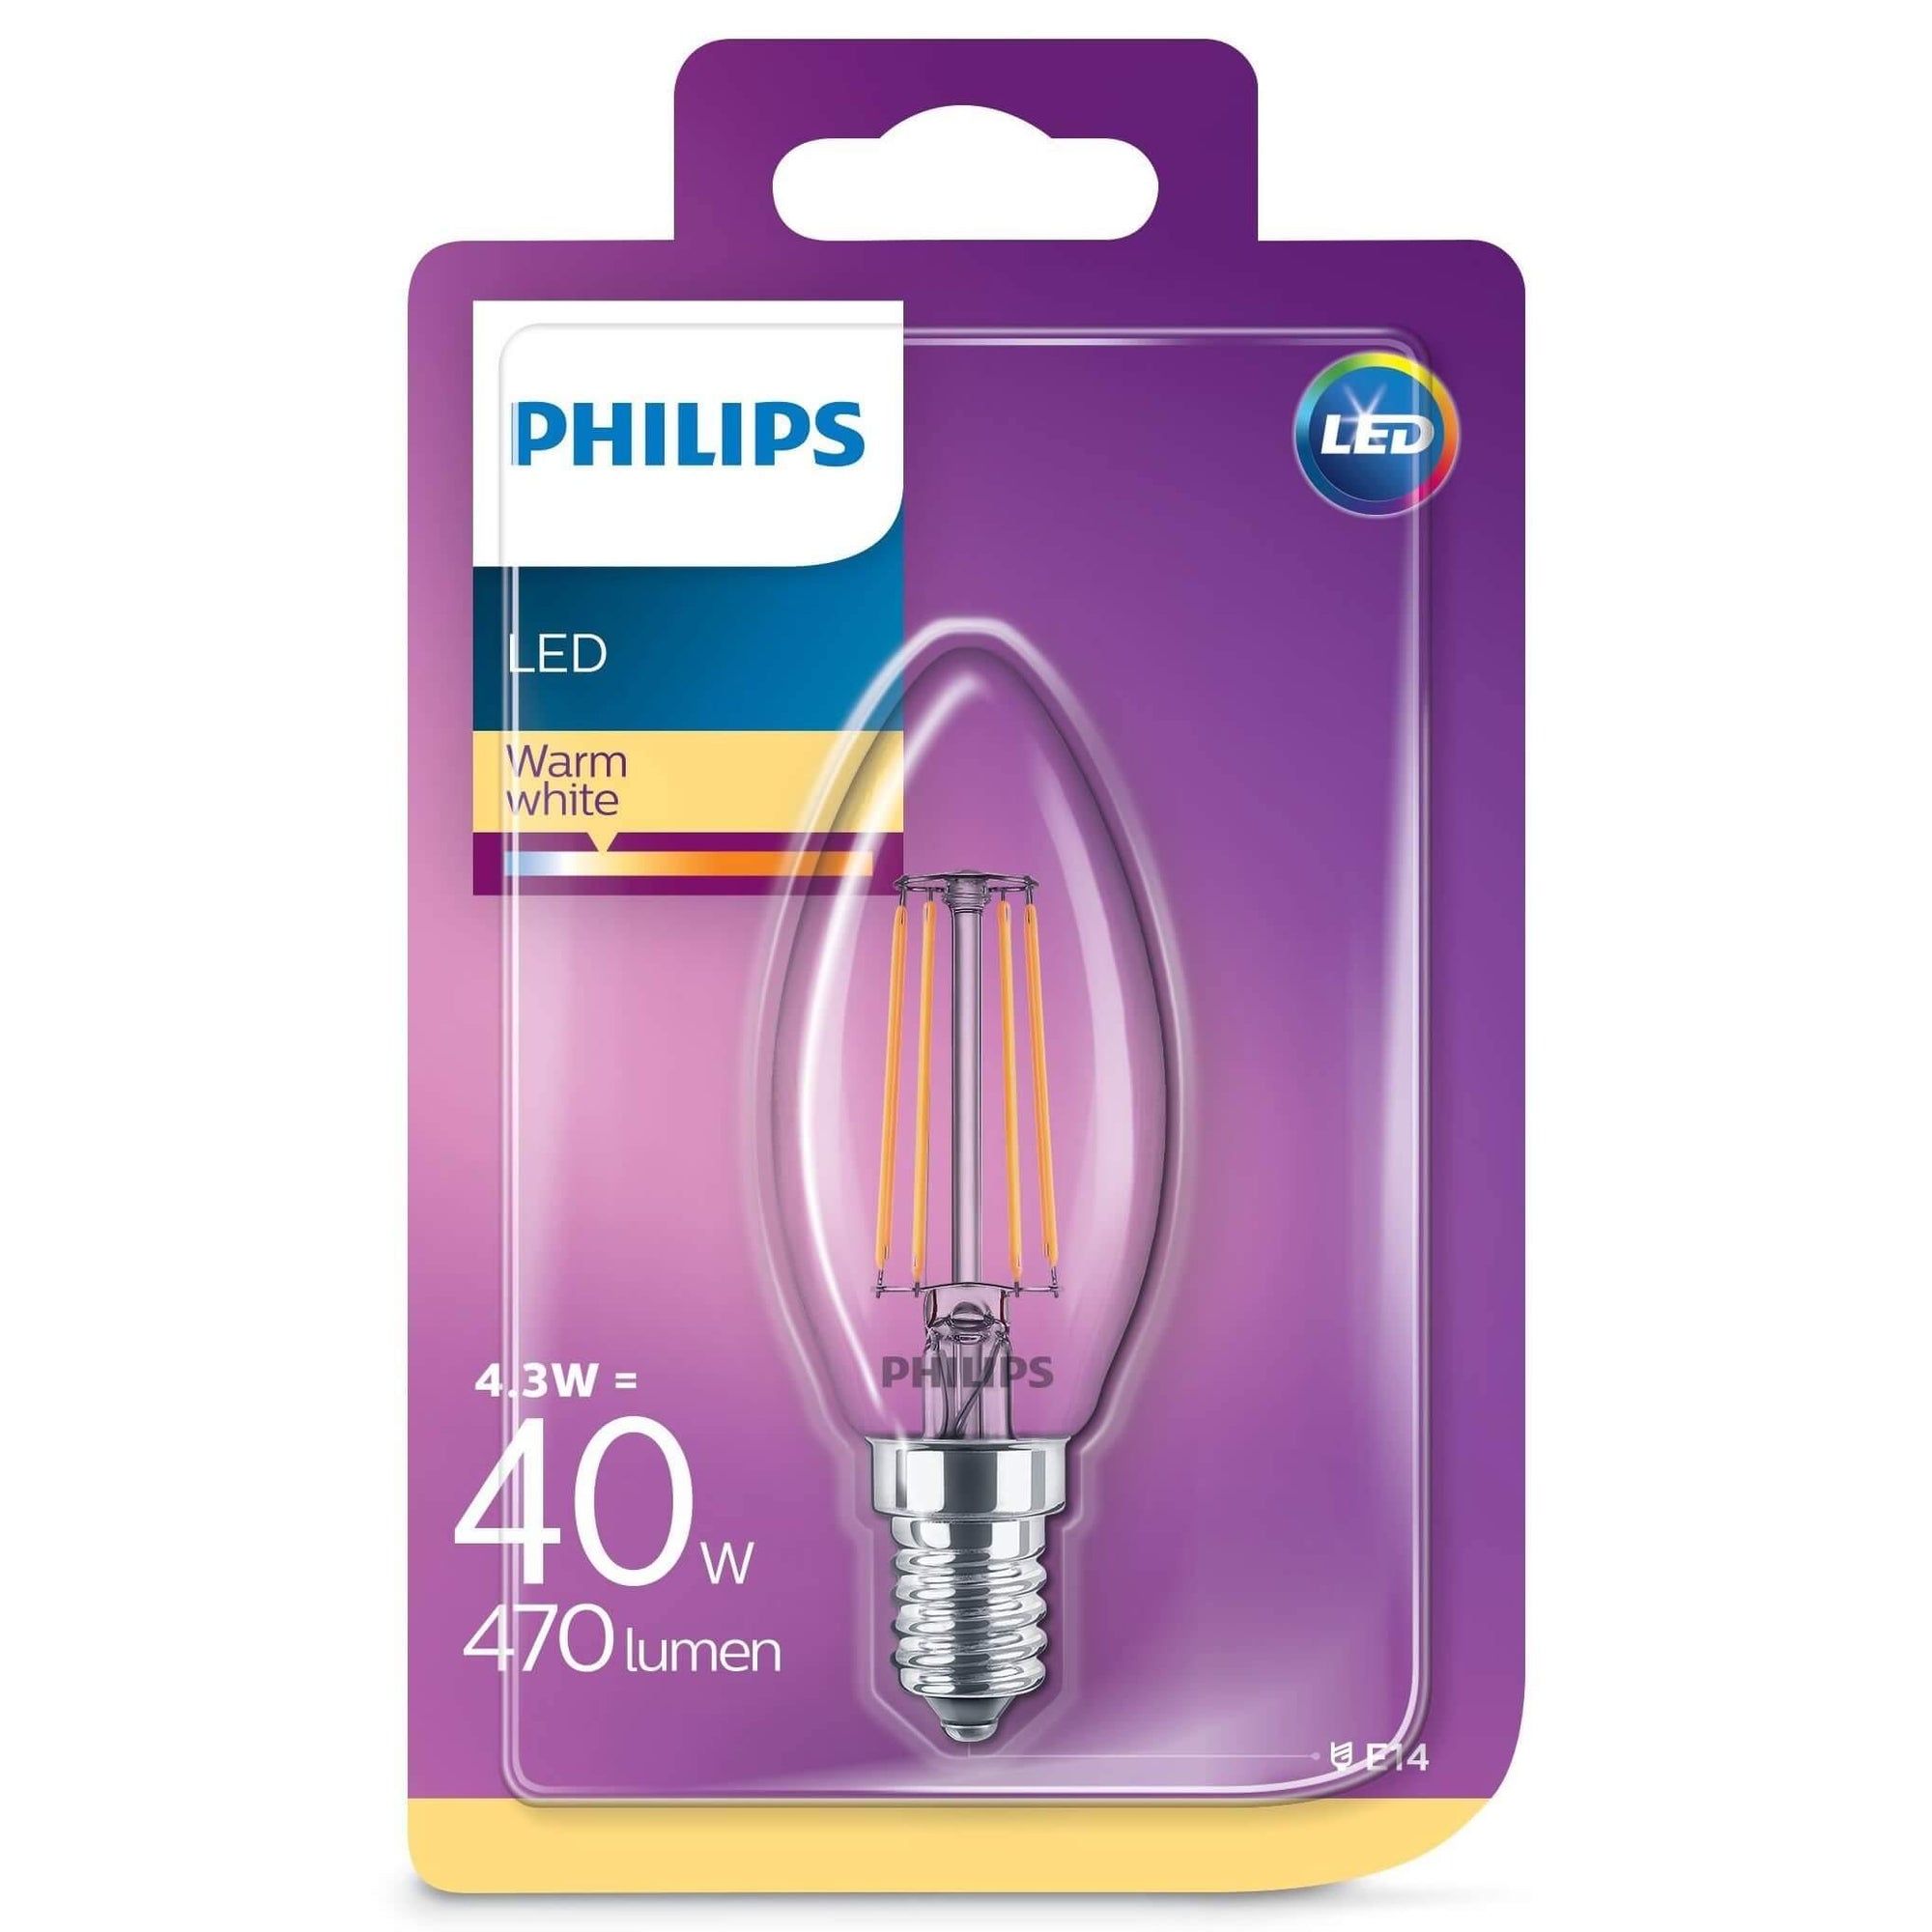 Domicilio Bec LED Philips cu filament si forma de lumanare (B35). Puterea de 4.3W in LED este echivalentul unui bec traditional cu halogen de 40W. Fluxul luminos este de 470 lumeni. Poate fi folosit pentru orice corp de iluminat cu soclu E14. Temperatura de culoare a luminii este de 2700K, lumina alba, calda. Opteaza pentru becurile LED pentru a reduce consumul de energie cu aproximativ 90% fata de becurile traditionale cu halogen.